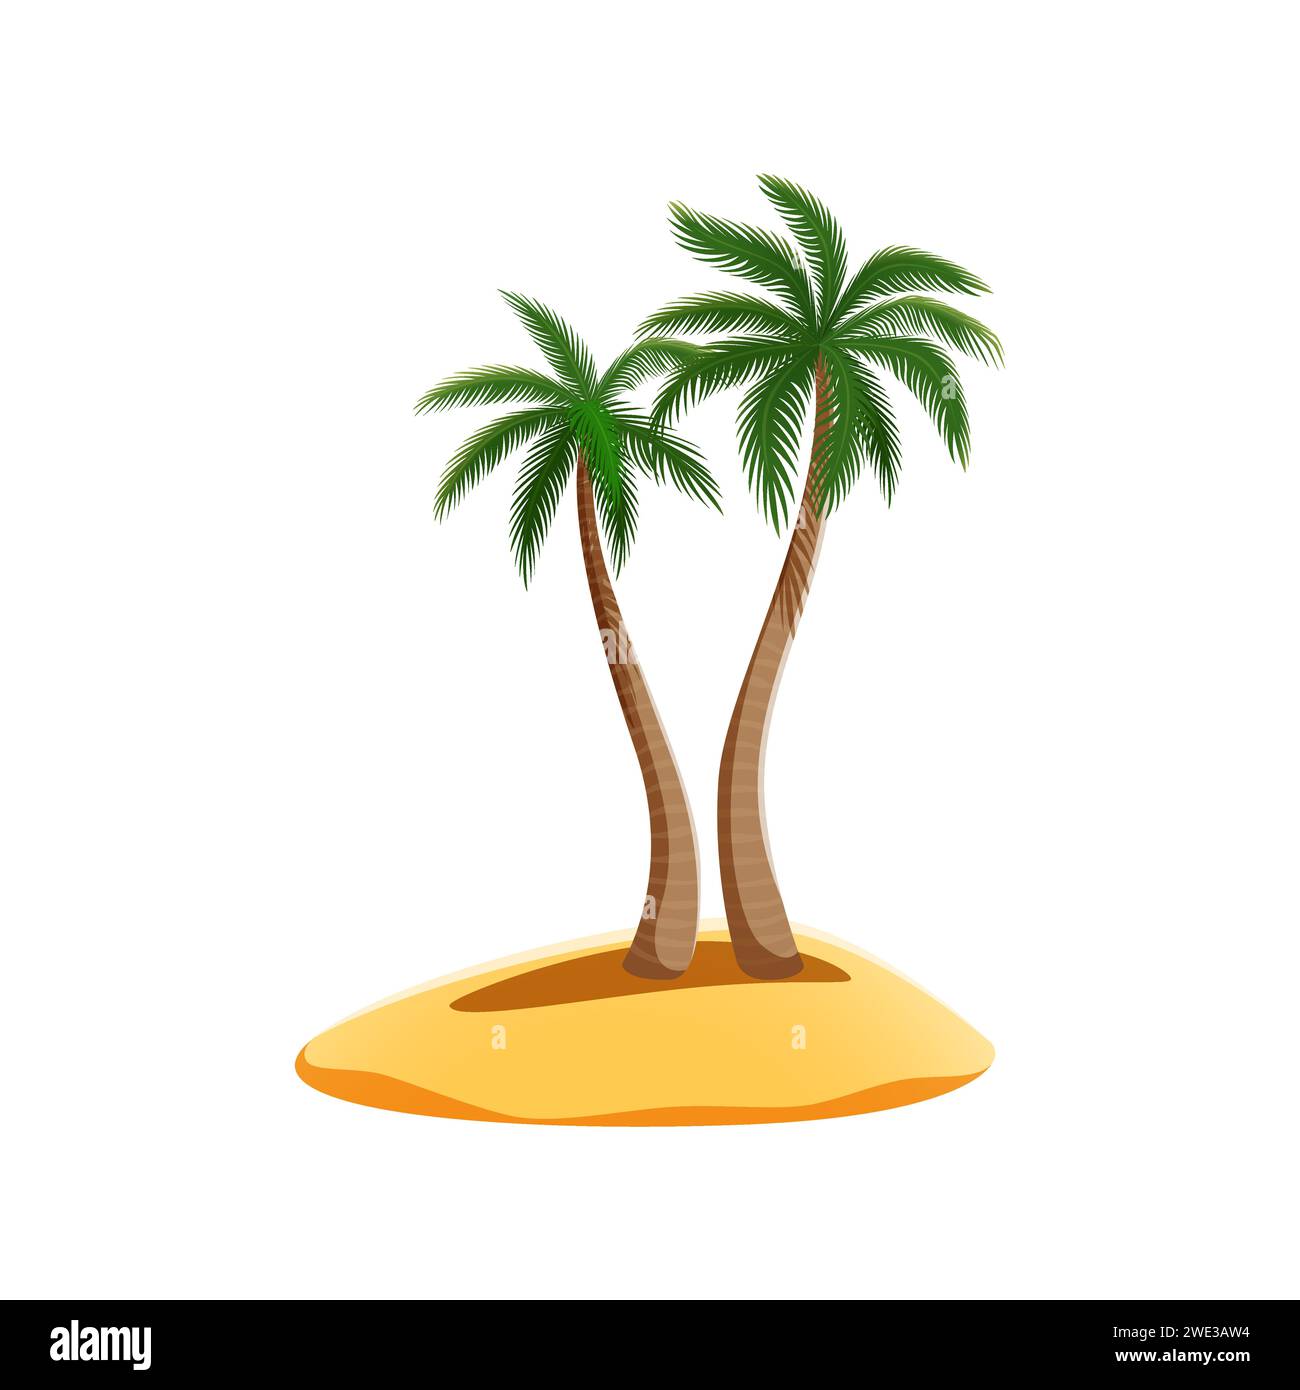 Karikatur-Pirateninsel mit Palmen, umgeben von goldenem Sand. Isoliertes Vektorparadies Land mit hohen und schlanken Palmen, die anmutig in der tropischen Brise schweben, ihre Wedel rascheln Stock Vektor